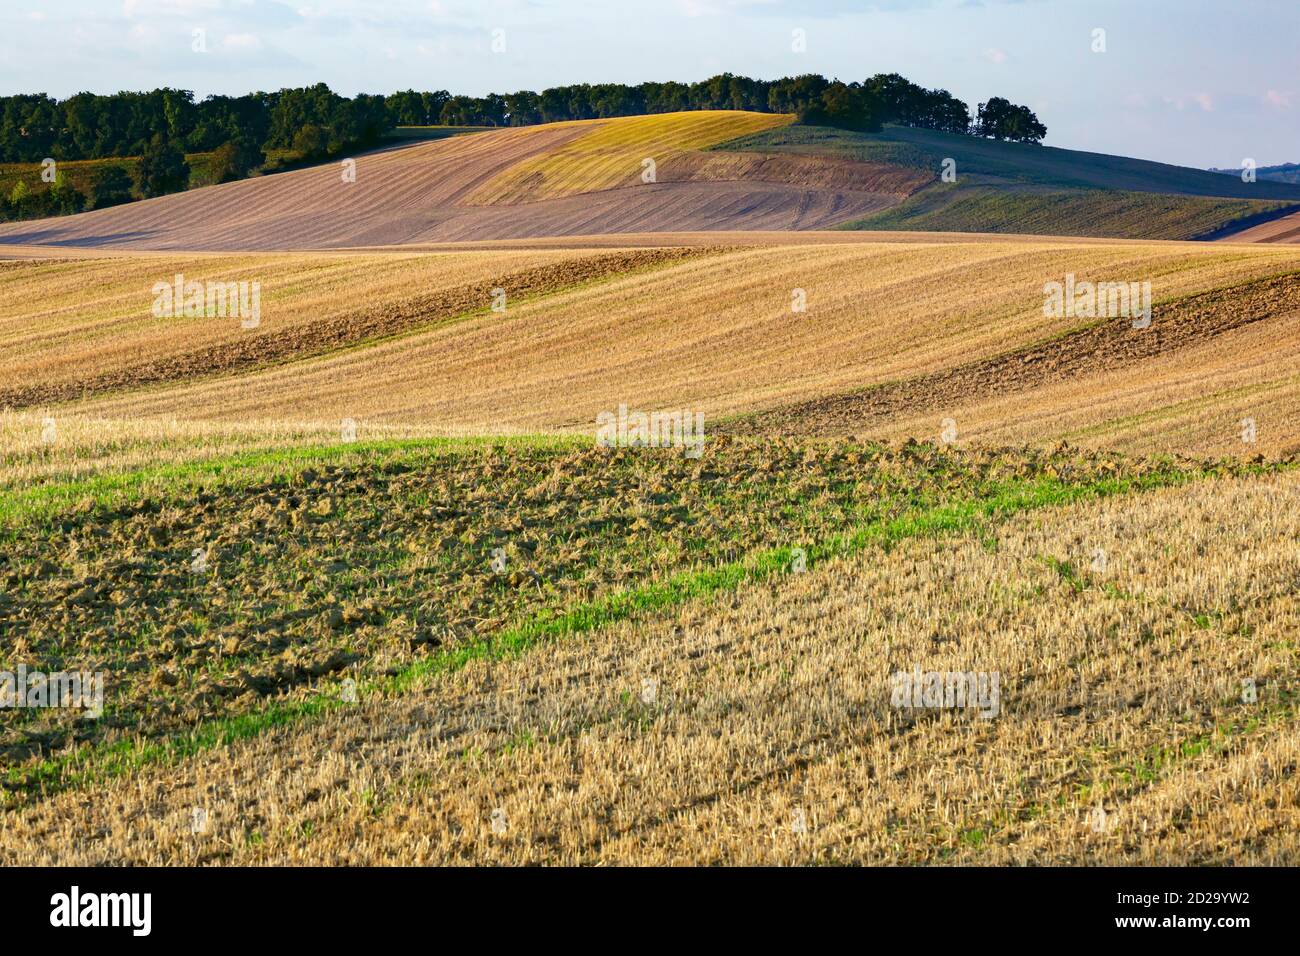 Un paesaggio agricolo di dolci colline che sono tipici della regione di Gers del sud-ovest della Francia. Foto Stock